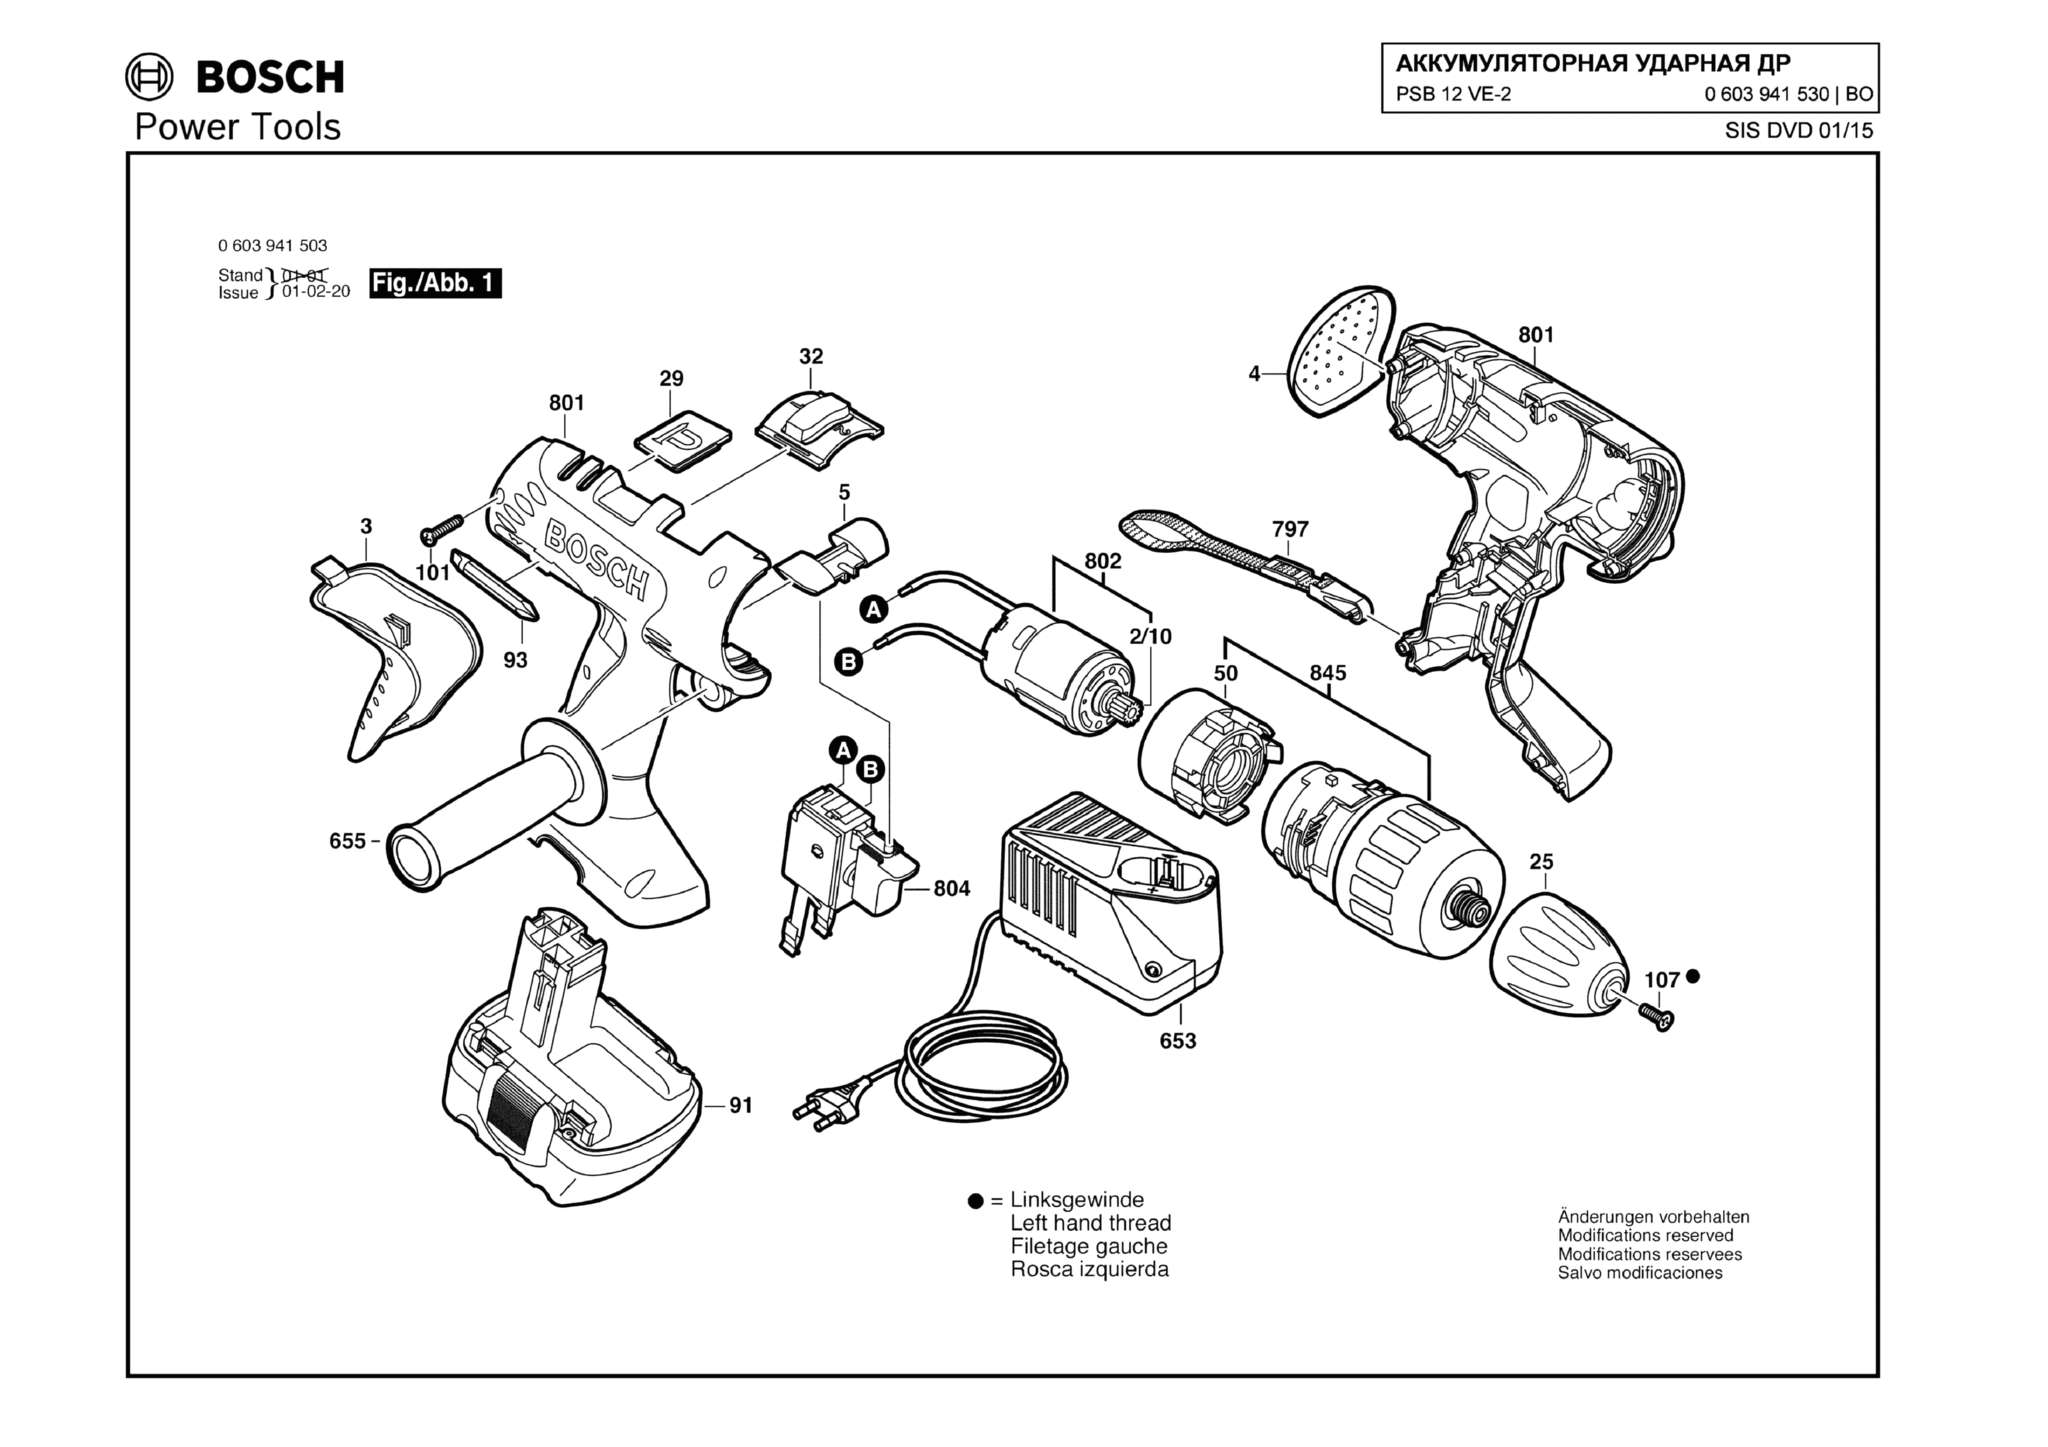 Запчасти, схема и деталировка Bosch PSB 12 VE-2 (ТИП 0603941530)